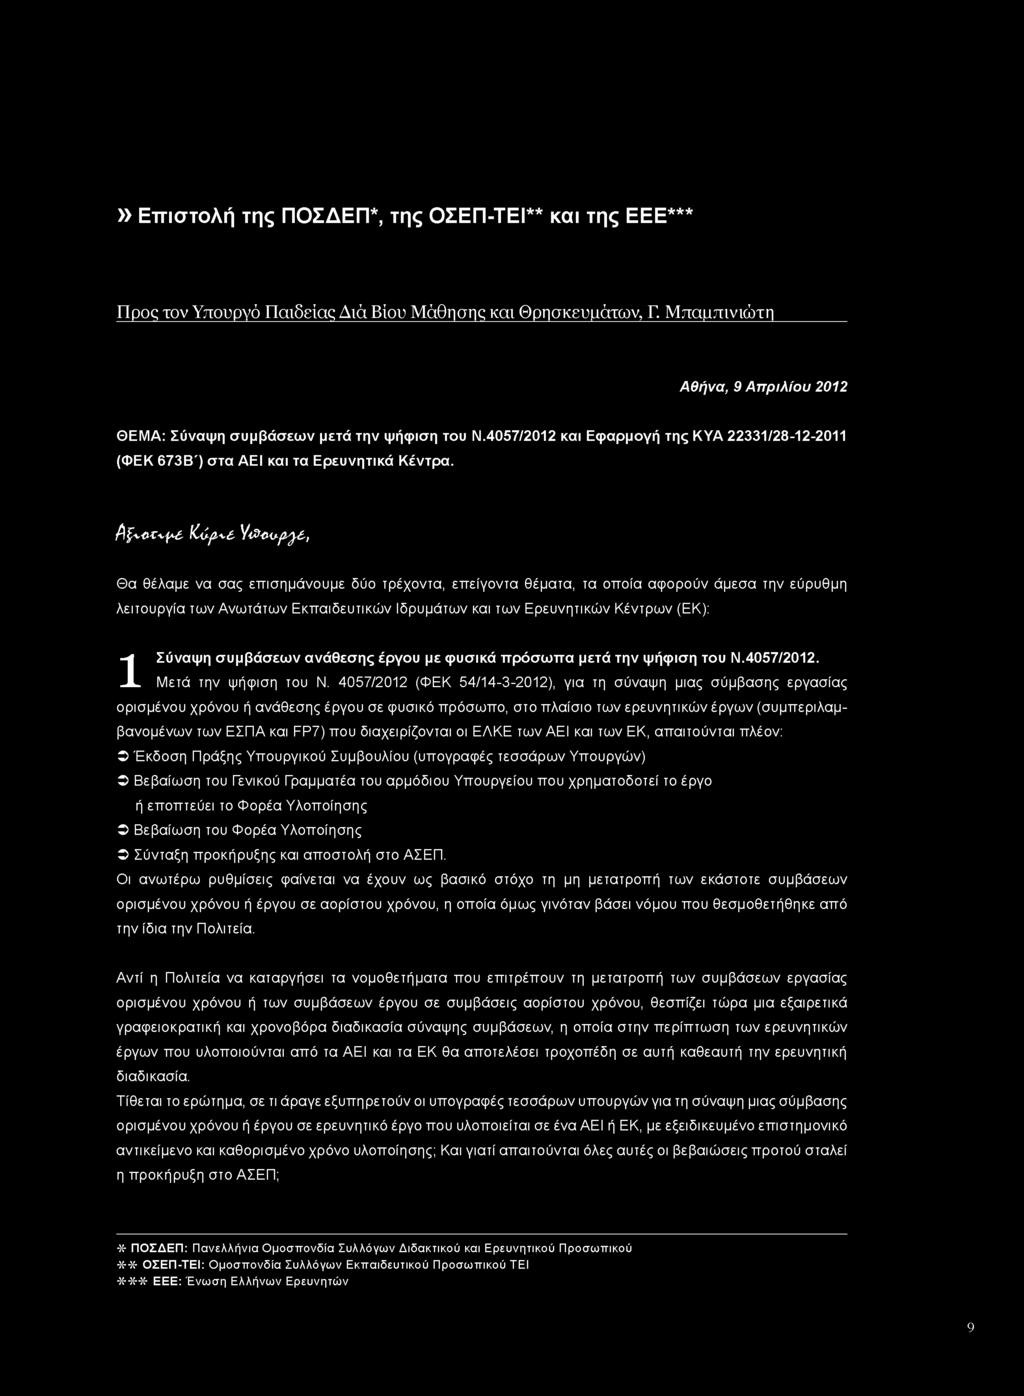 4057/2012 (ΦΕΚ 54/14-3-2012), για τη σύναψη μιας σύμβασης εργασίας ορισμένου χρόνου ή ανάθεσης έργου σε φυσικό πρόσωπο, στο πλαίσιο των ερευνητικών έργων (συμπεριλαμβανομένων των ΕΣΠΑ και FP7) που